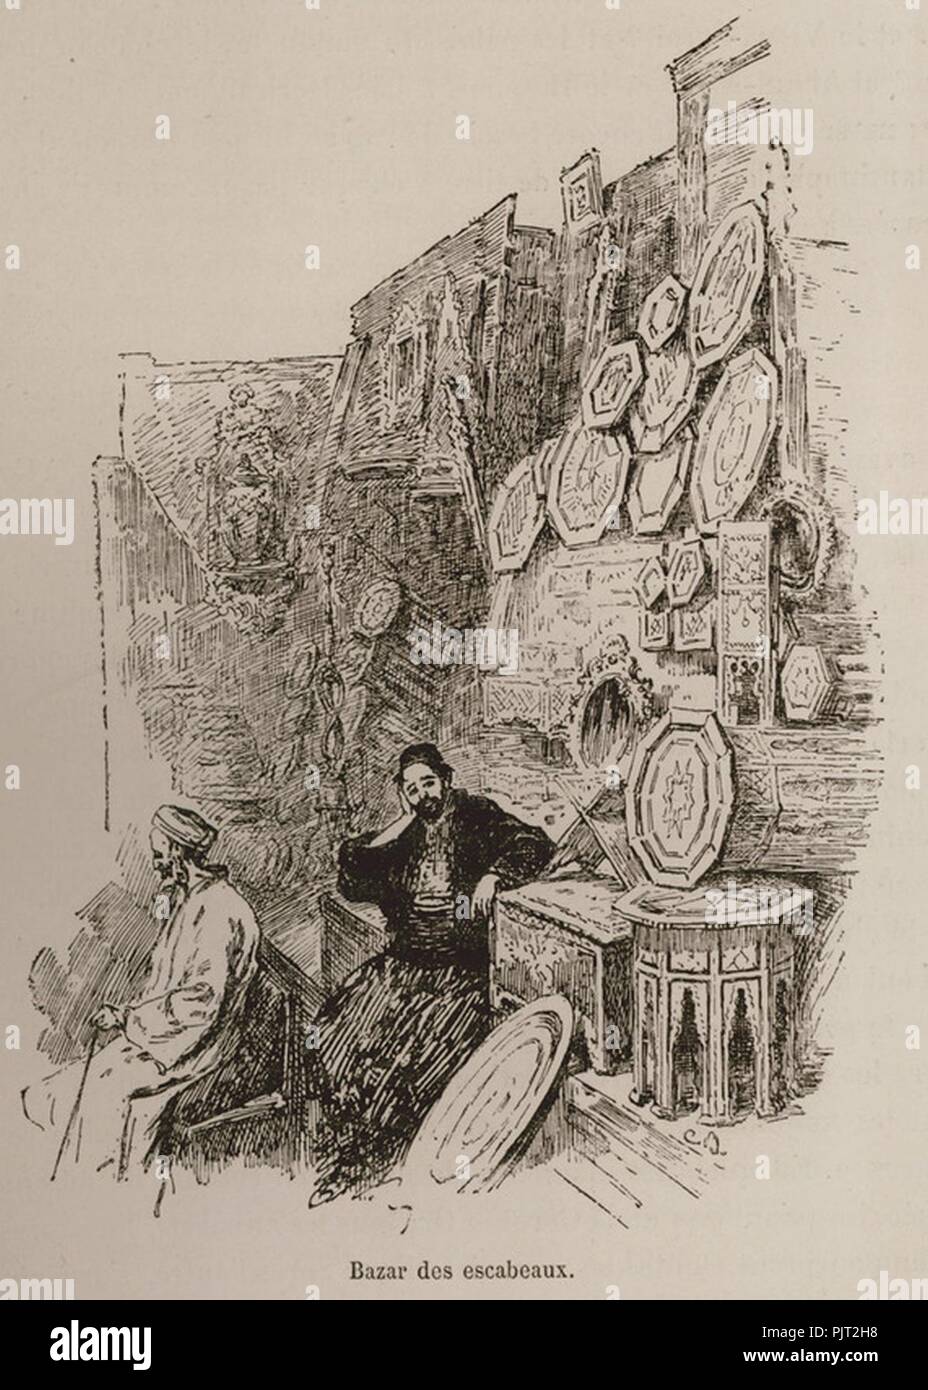 Bazar des escabeaux - De Amicis Edmondo - 1883. Stock Photo